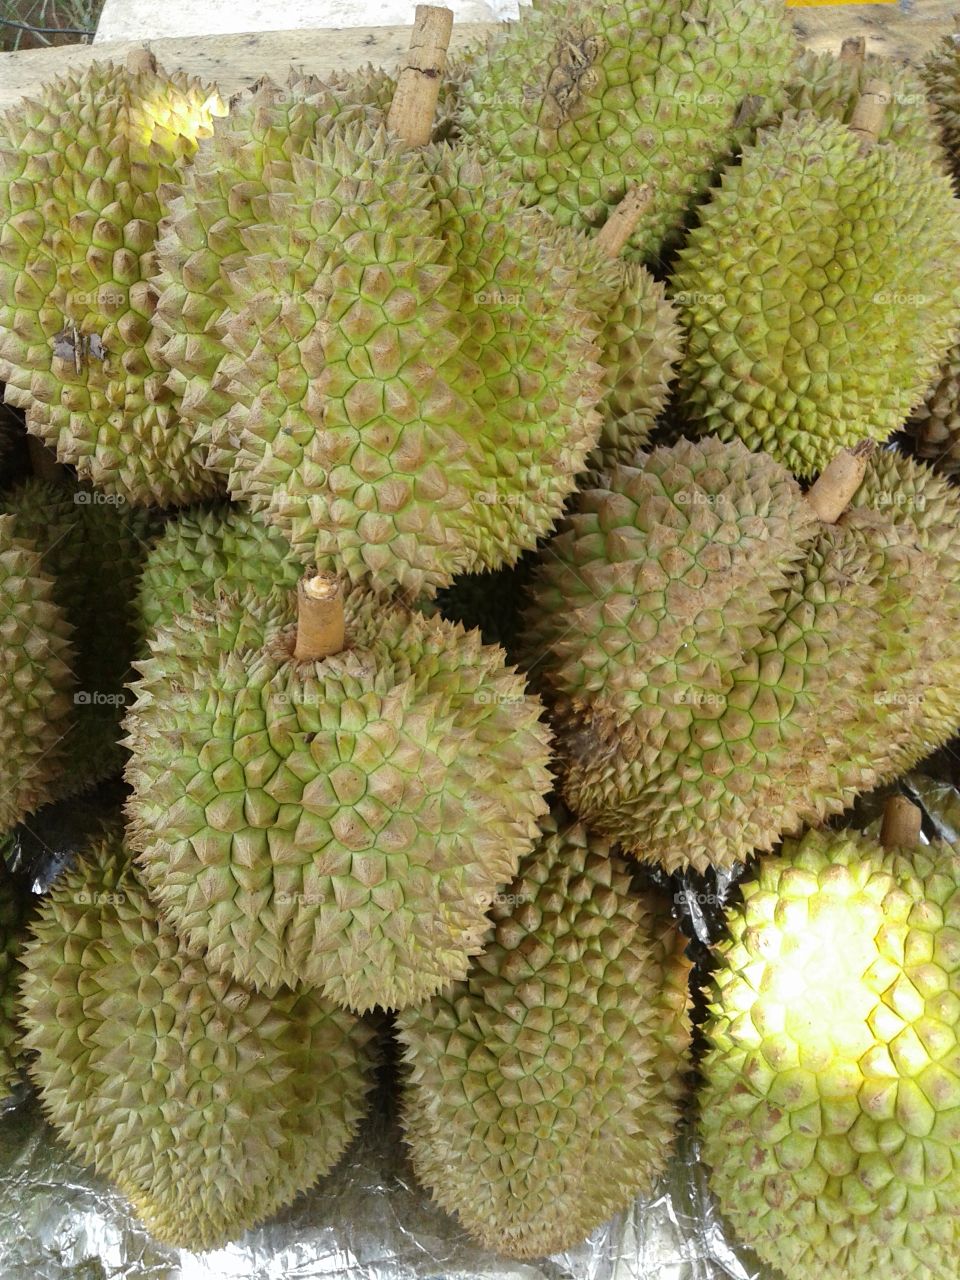 Durian species